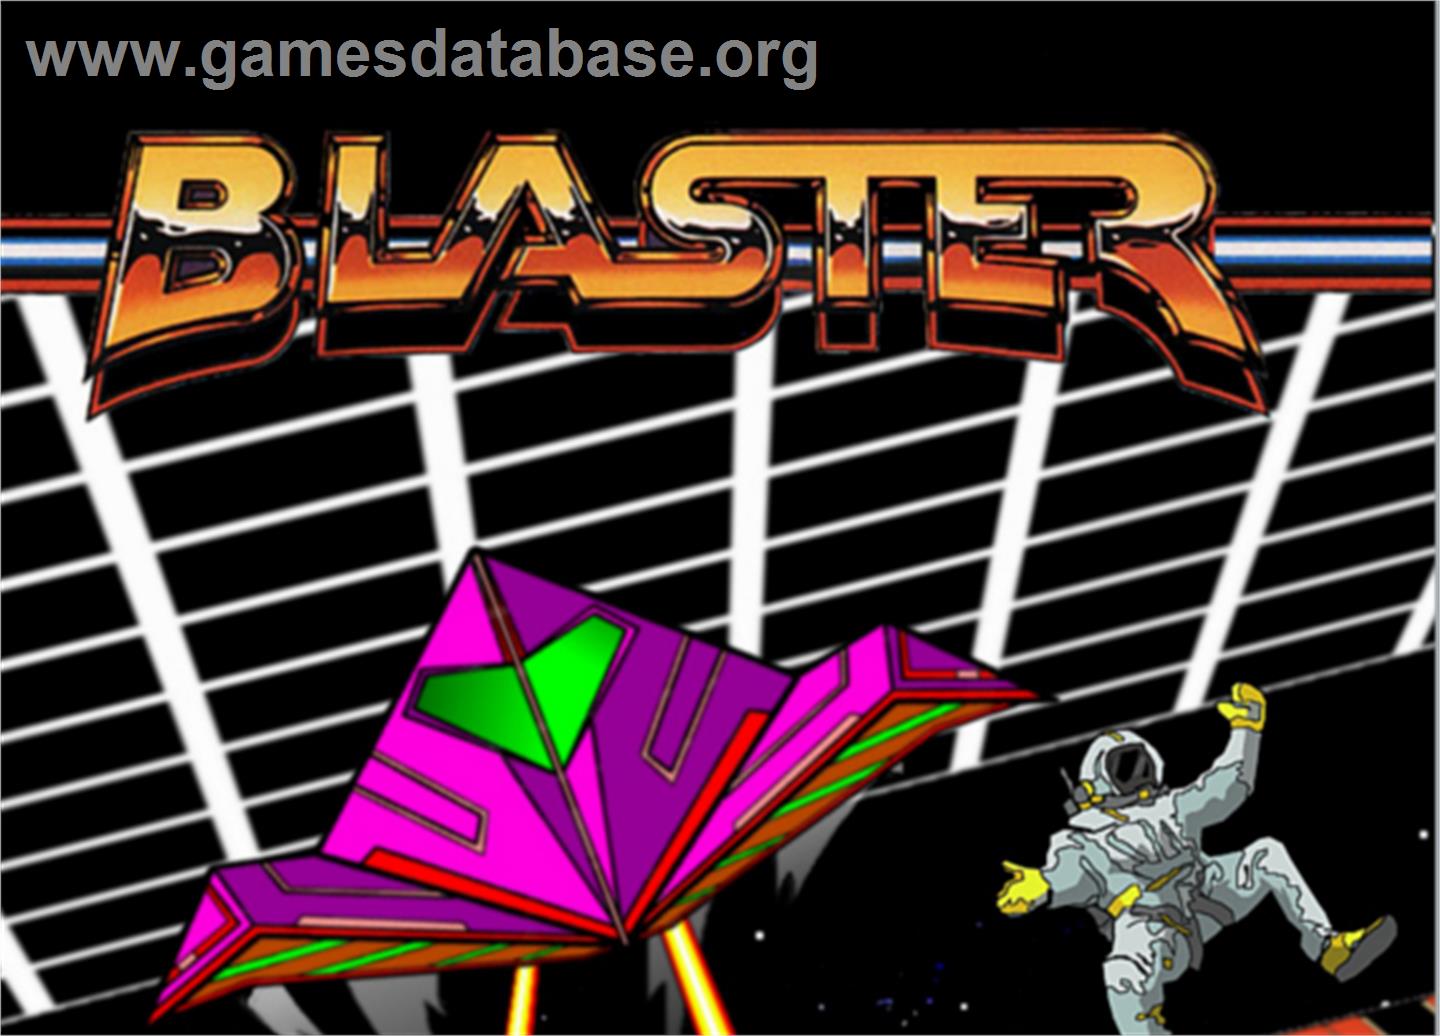 Blaster - Atari 5200 - Artwork - Cartridge Top